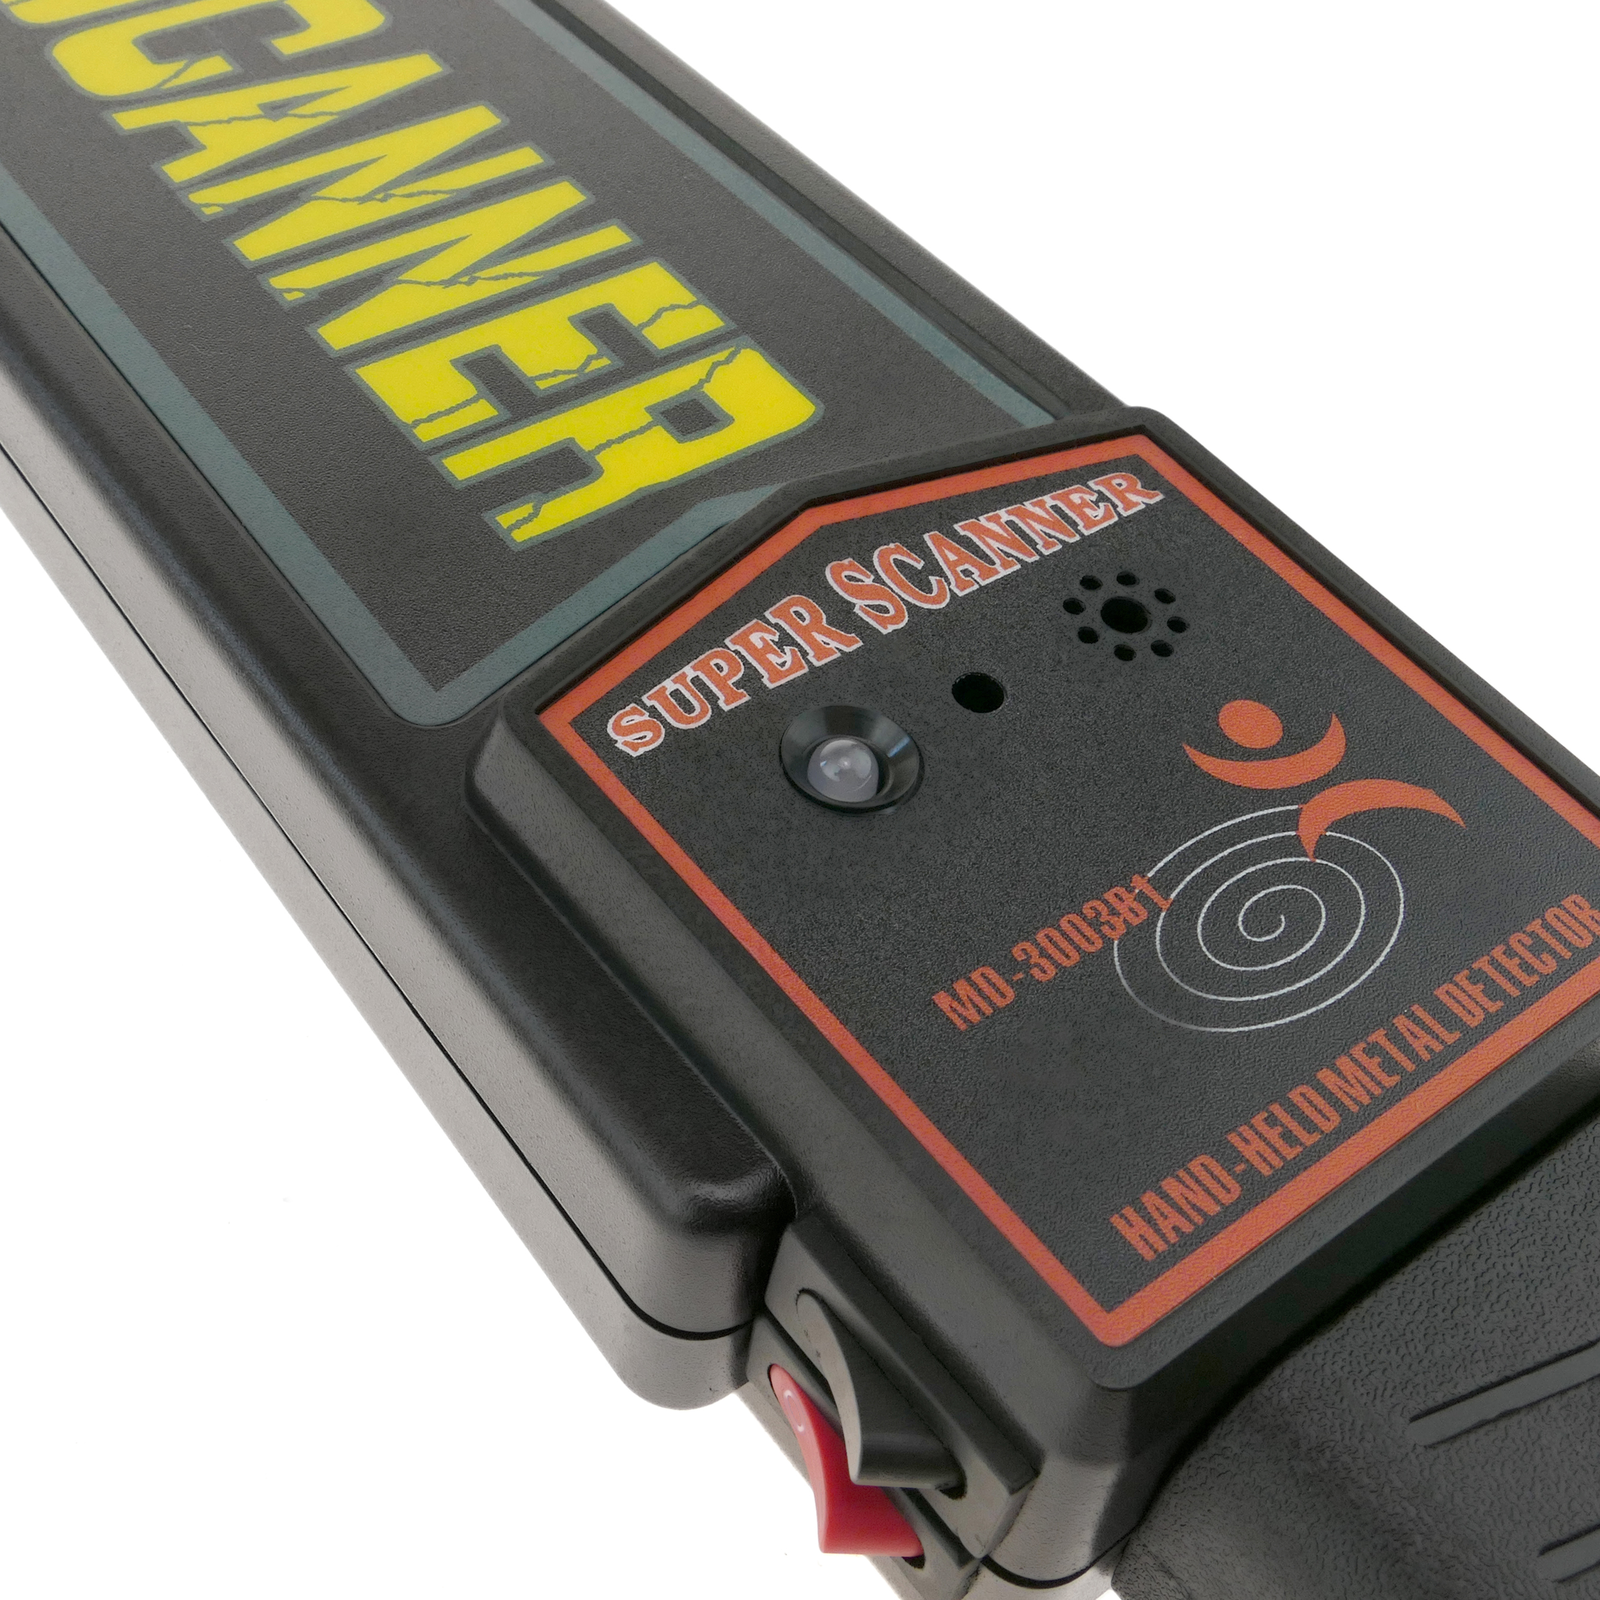 Détecteur de métaux portable haute sensibilité : Devis sur Techni-Contact -  appareil de détection avec alarme